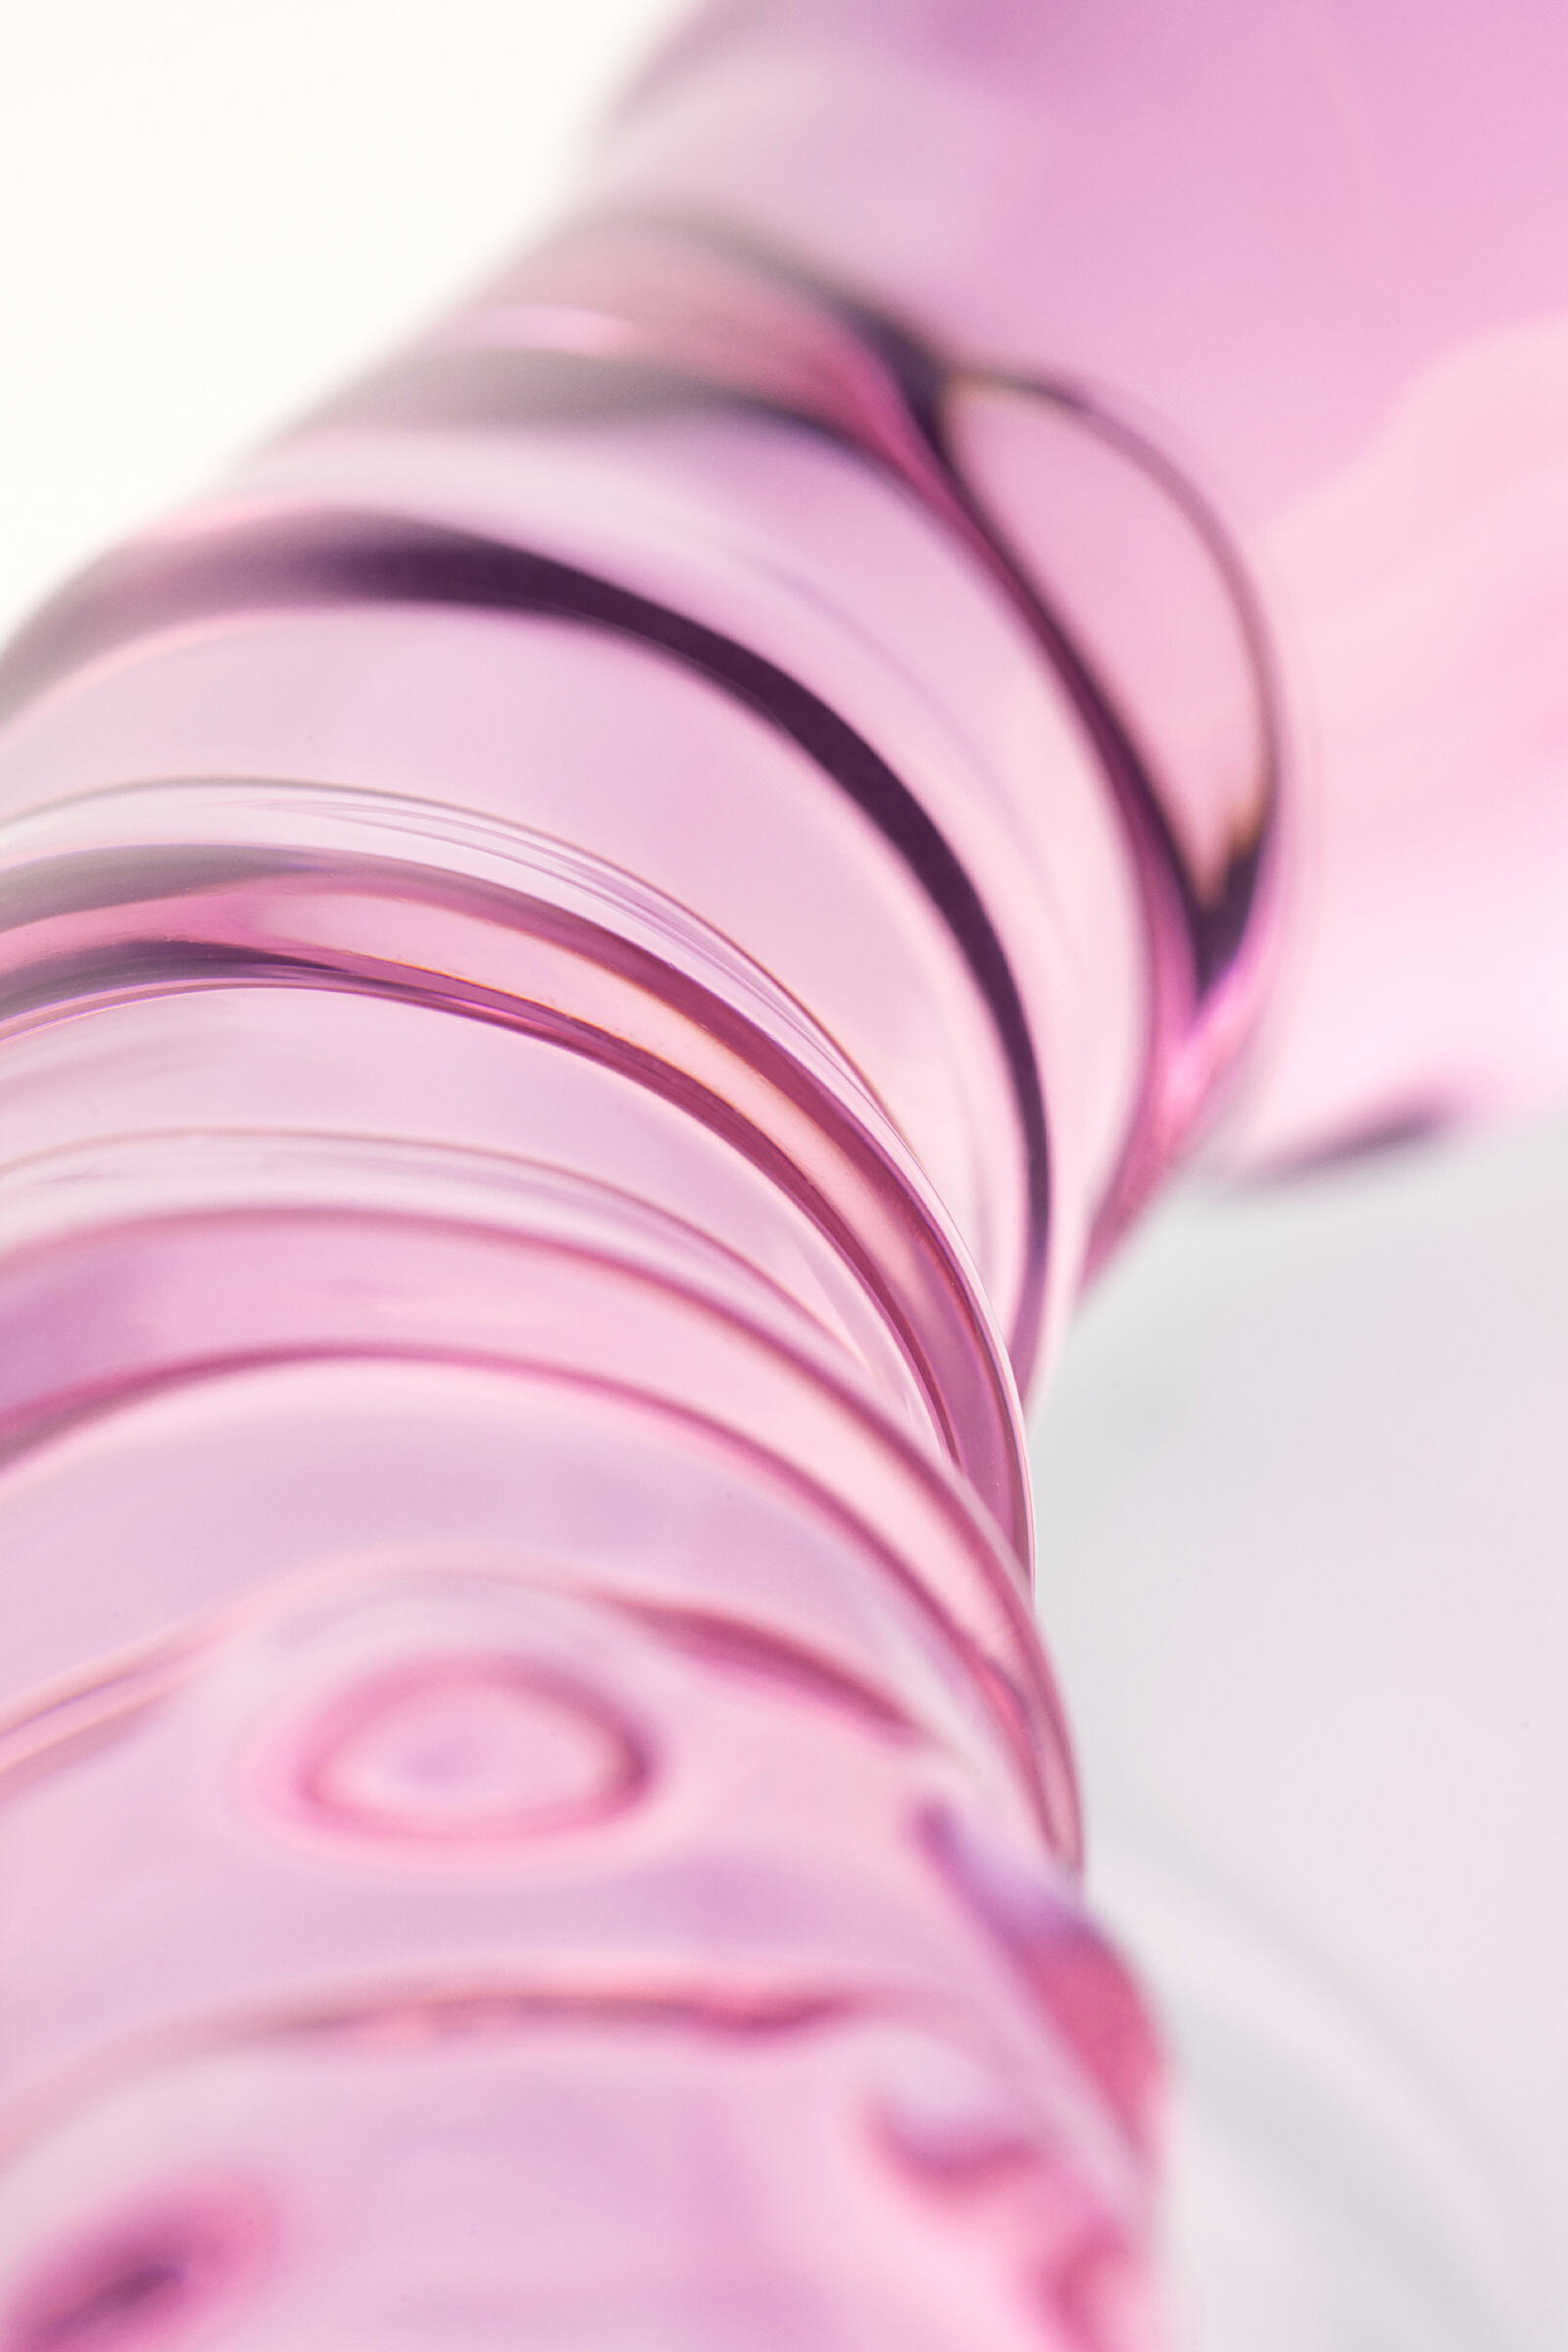 Двусторонний стимулятор Sexus Glass 20.5 см, розовый